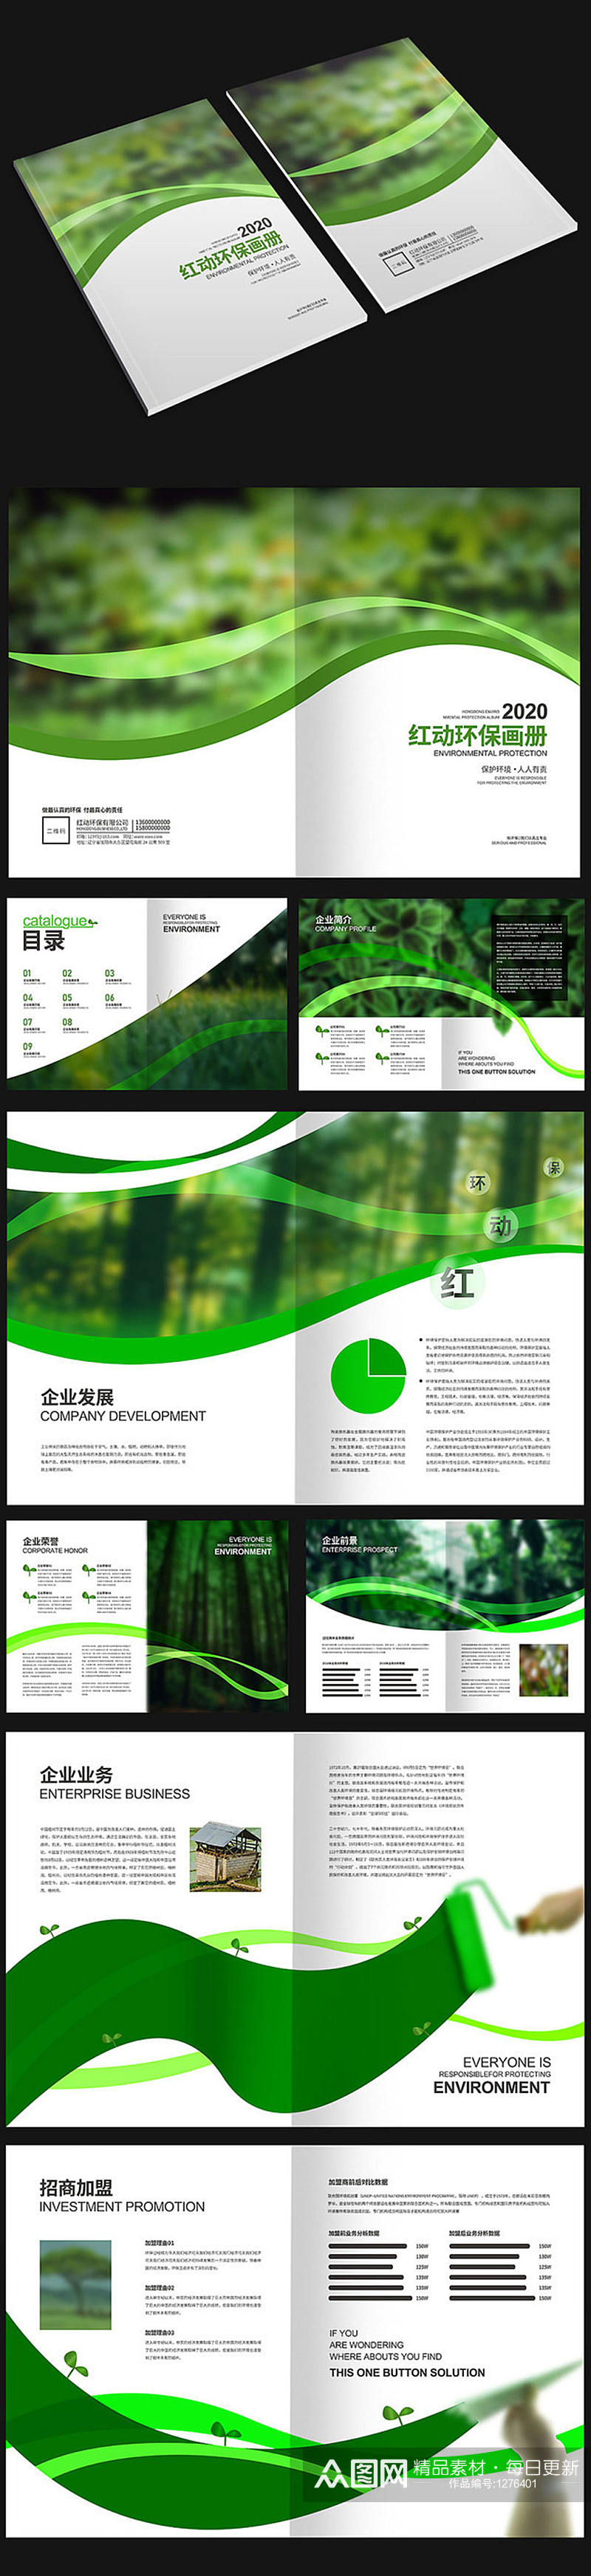 绿色高端环保画册素材